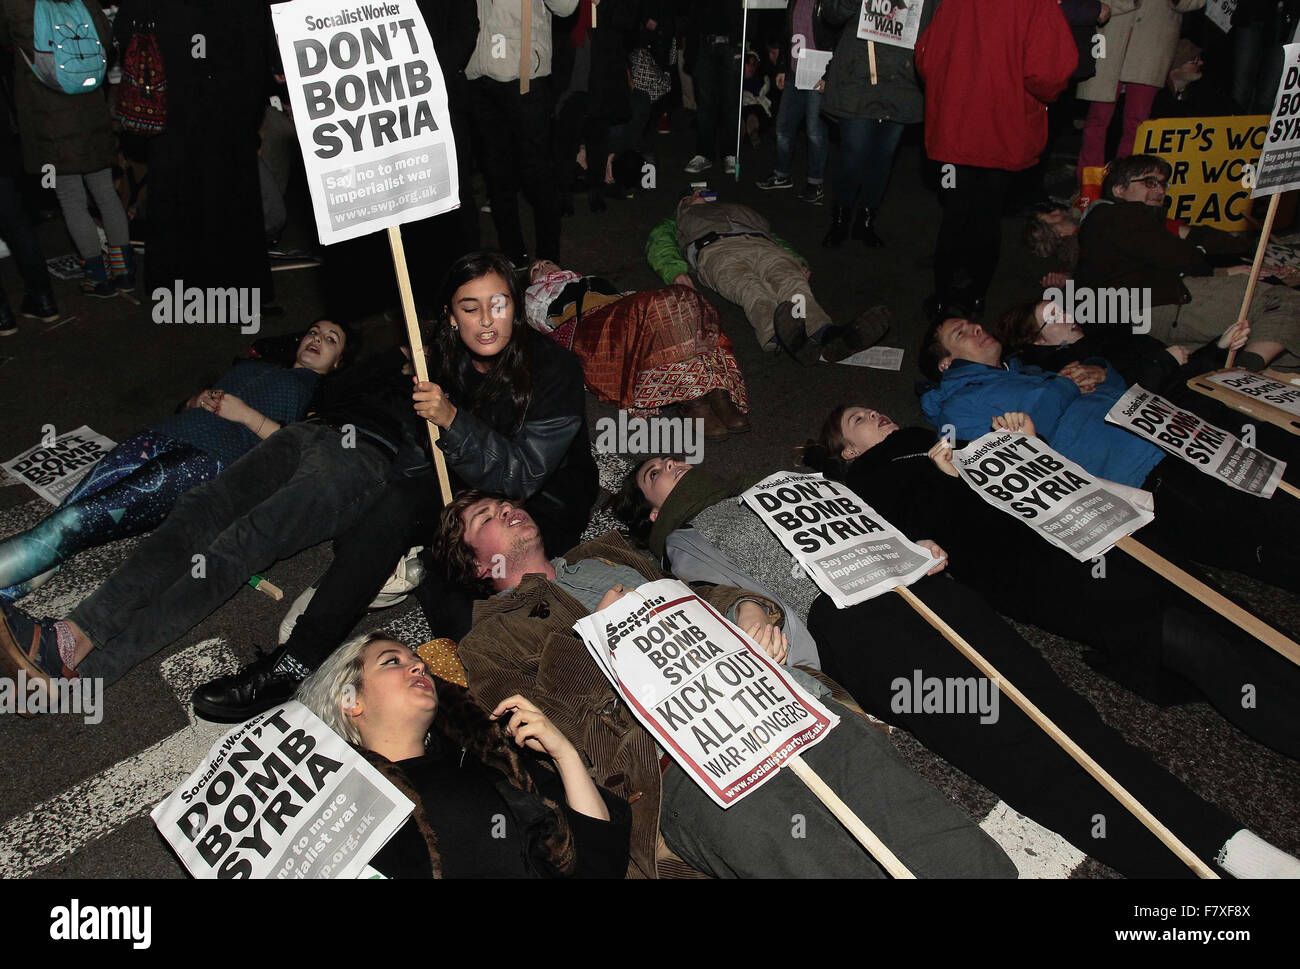 Chambre des communes, Londres, Royaume-Uni. 2 Décembre, 2015. Des manifestants anti-guerre contre le bombardement de la Syrie à l'extérieur de la Chambre des communes portant des pancartes. Credit : yeux omniprésents/Alamy Live News Banque D'Images